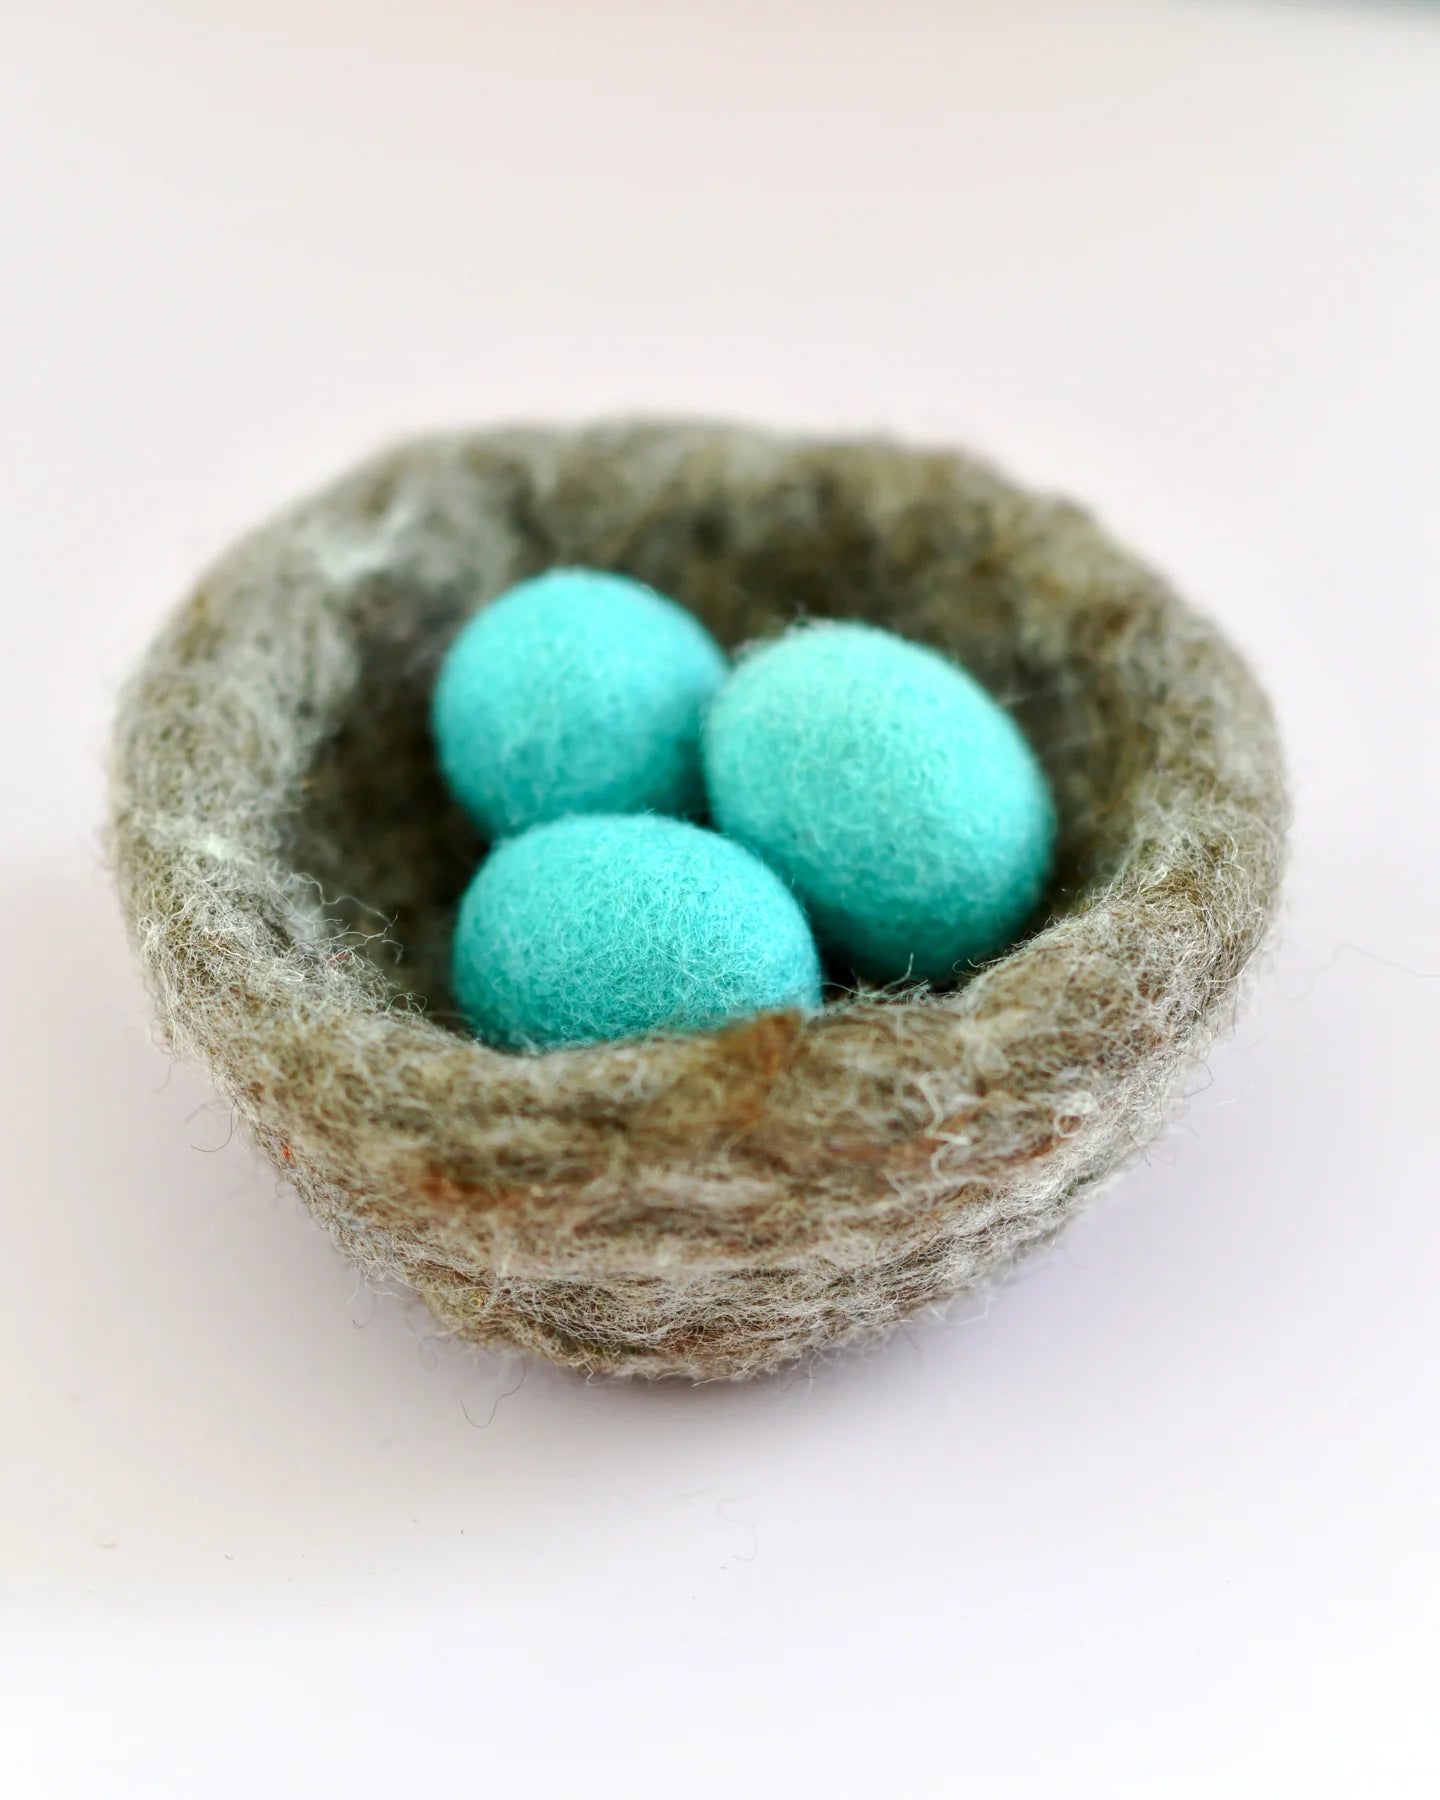 Tara Treasures Felt Nest with 3 Blue Robin Eggs